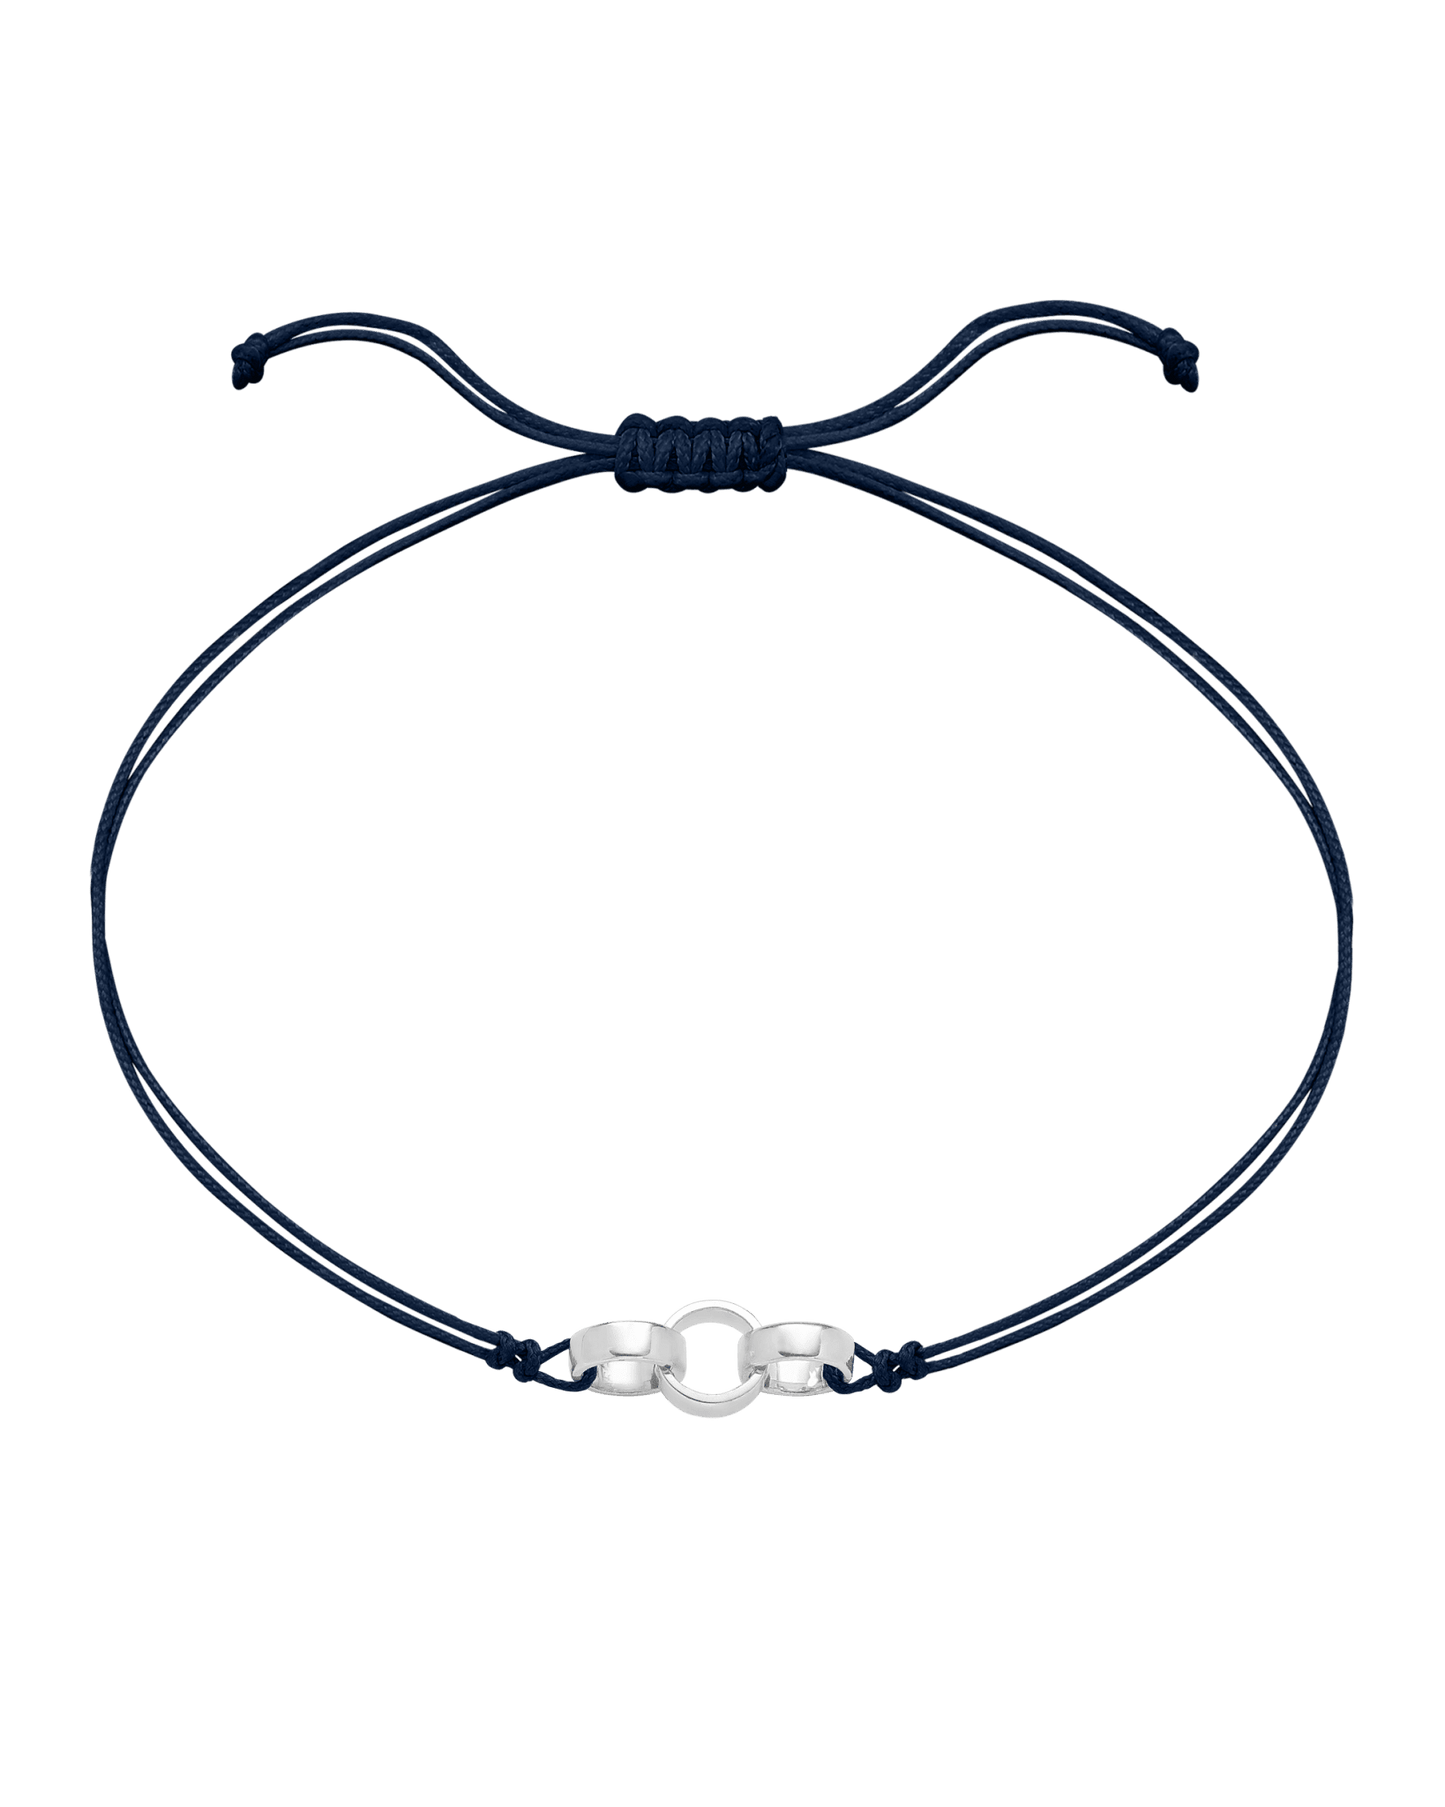 Engravable Links of Love - 925 Sterling Silver Bracelets magal-dev 3 Navy Blue 